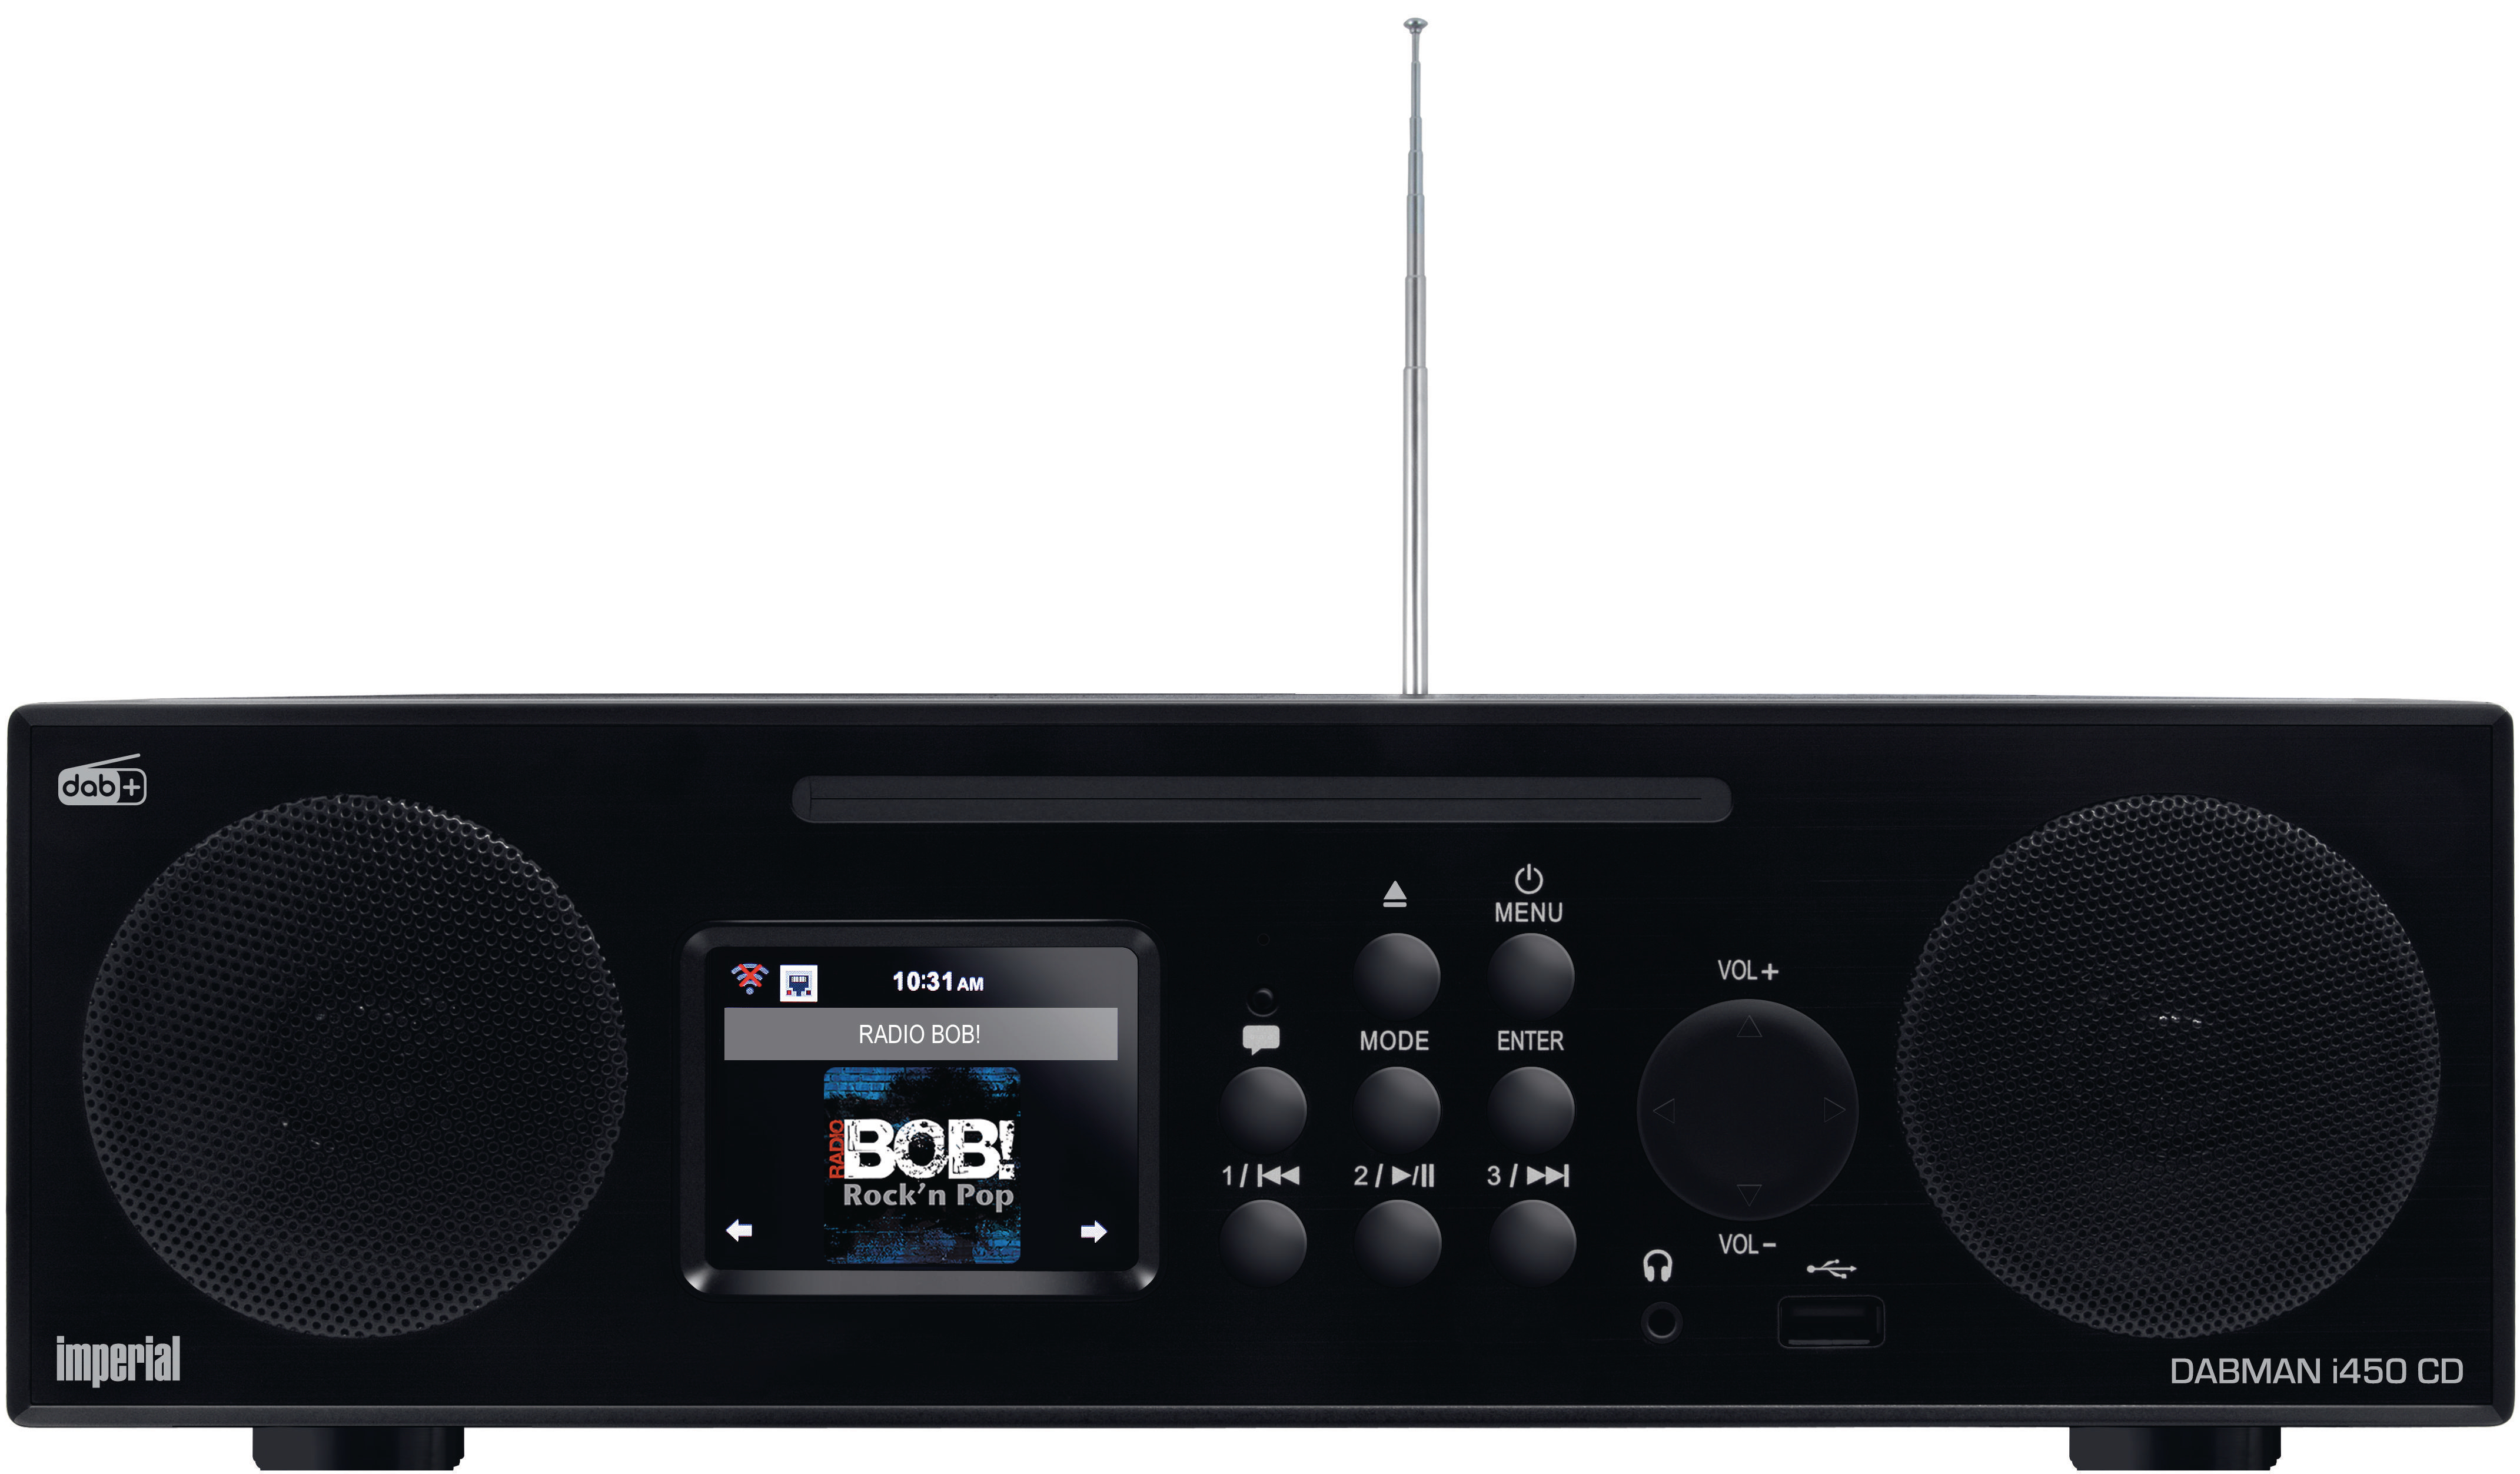 DAB, Radio, DAB+ DAB+, i450 IMPERIAL CD Bluetooth, FM, Internet Radio, DABMAN Schwarz AM,